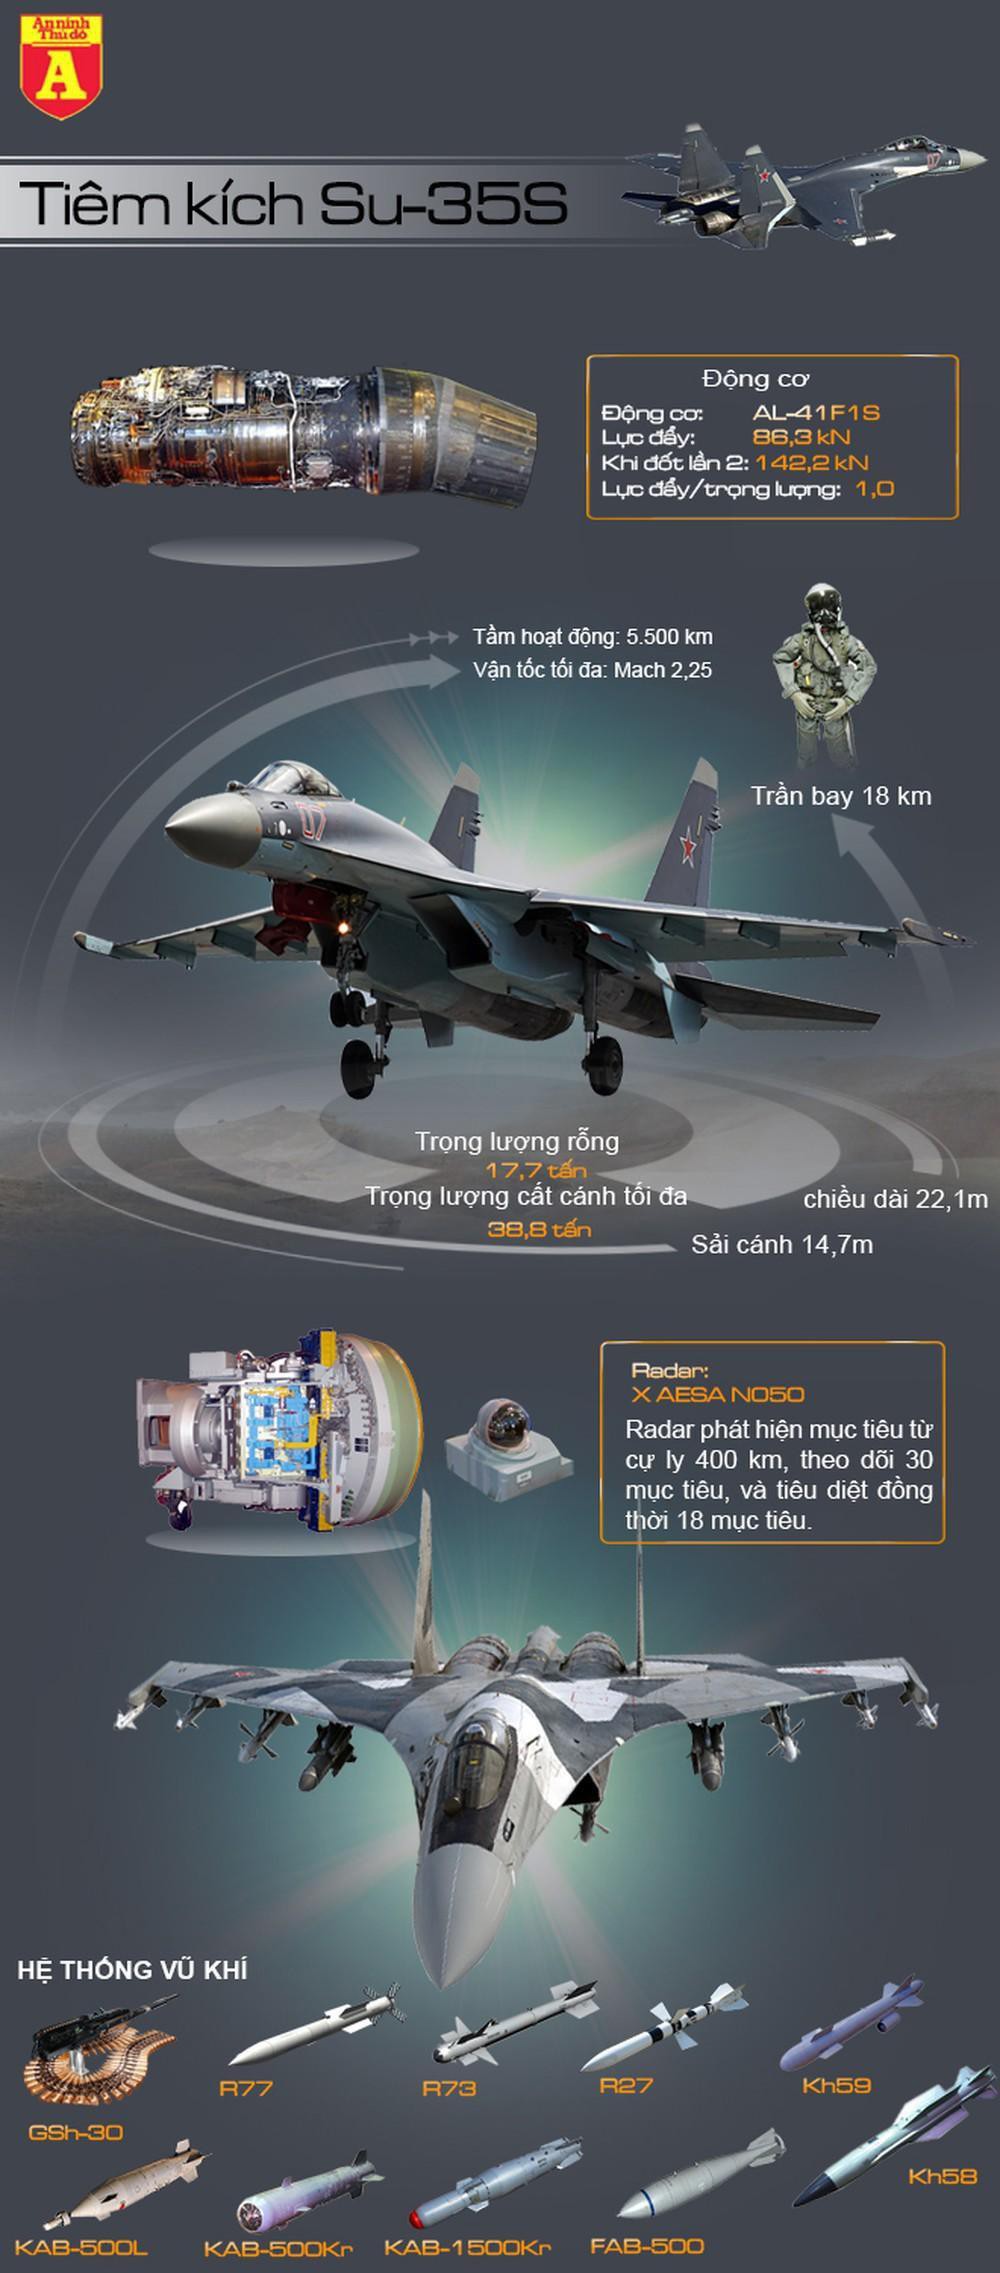 Sức chiến đấu của tiêm kích Su-35S - Ảnh 1